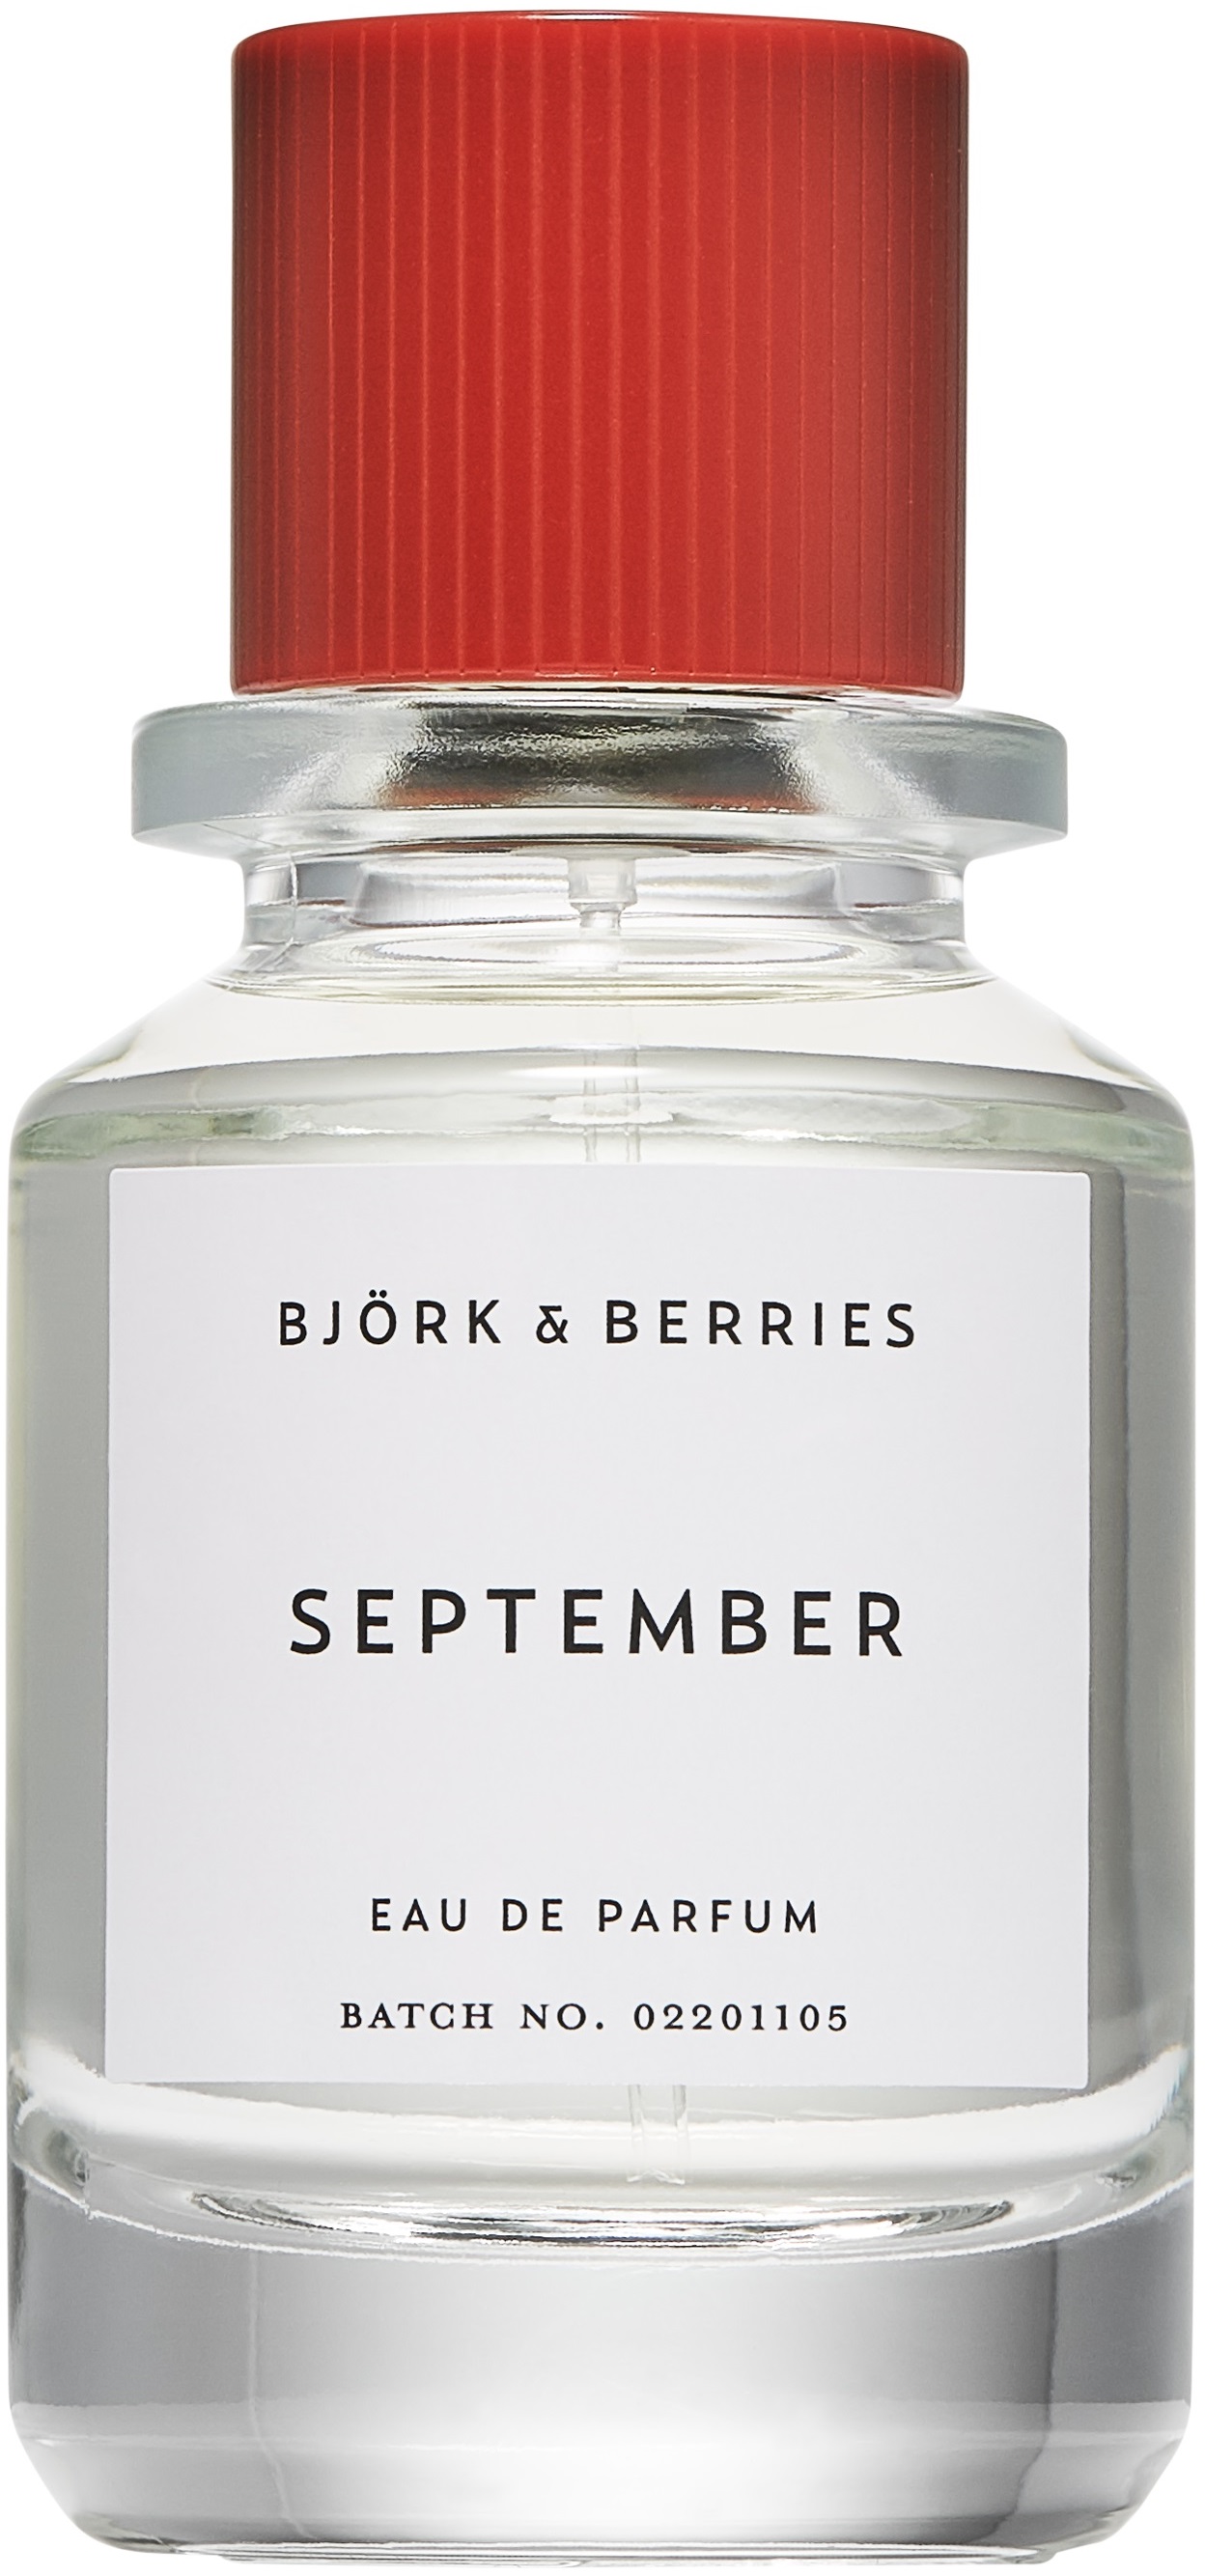 bjork & berries september